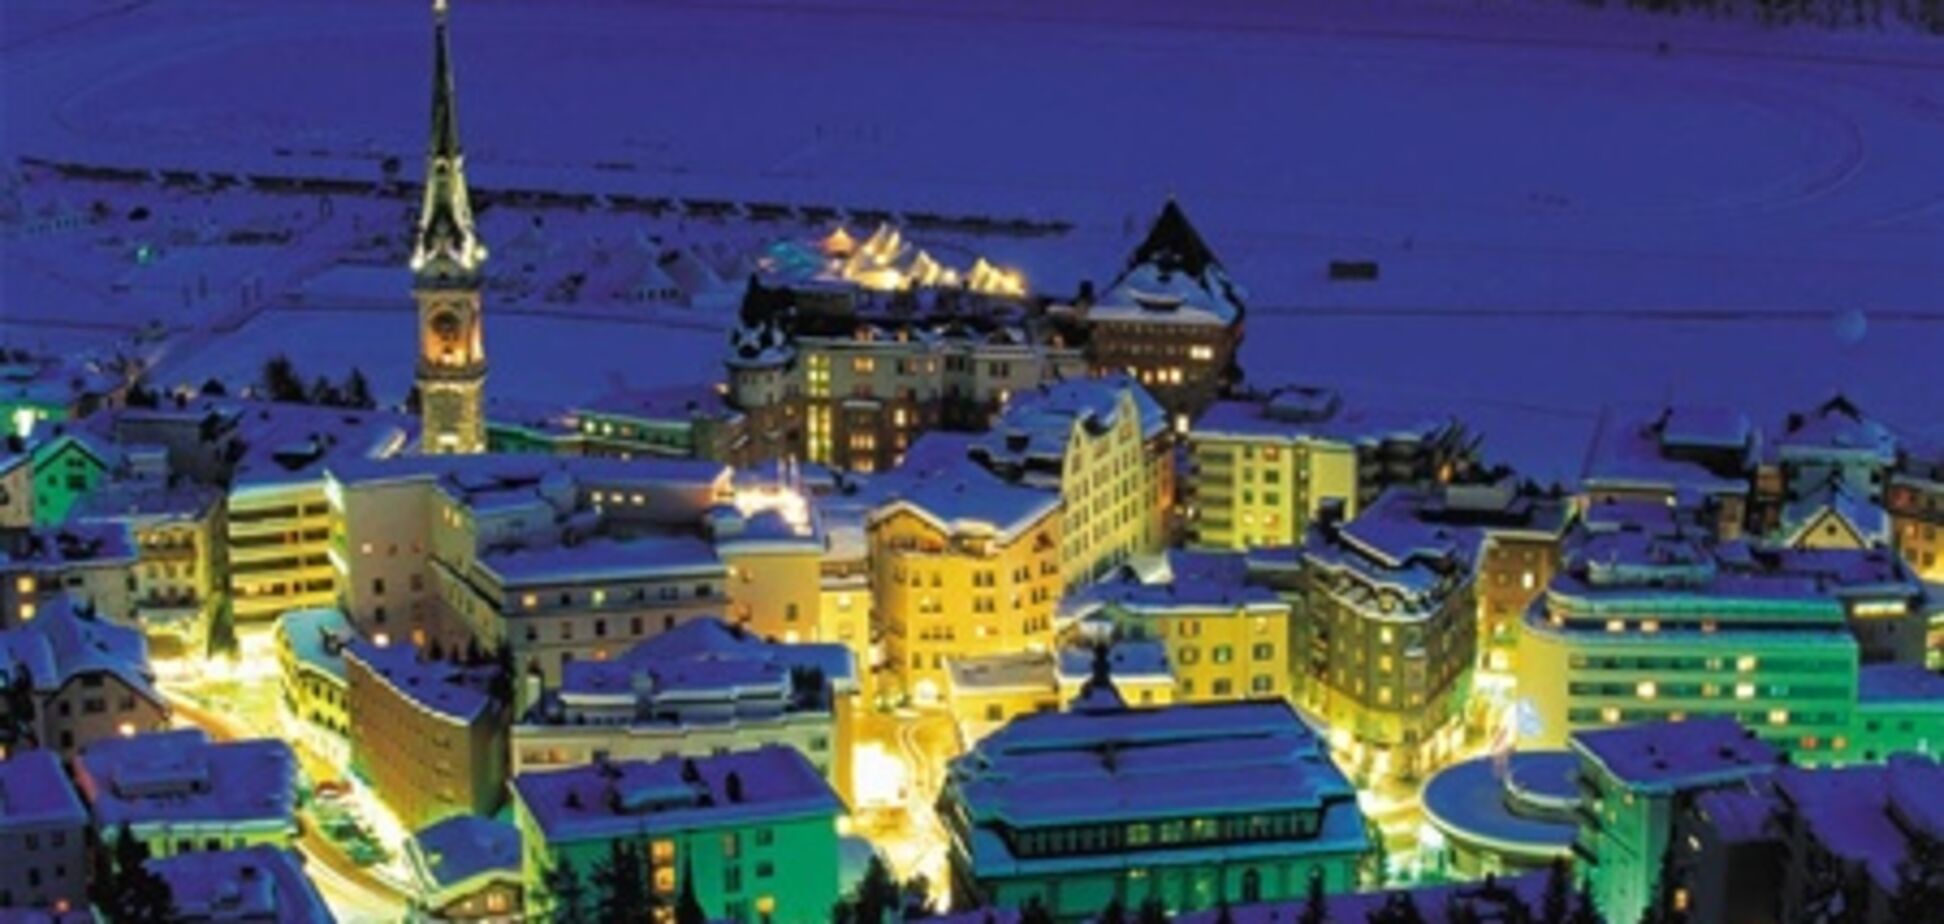 Швейцарский горнолыжный курорт Санкт-Мориц признан лучшим в Европе